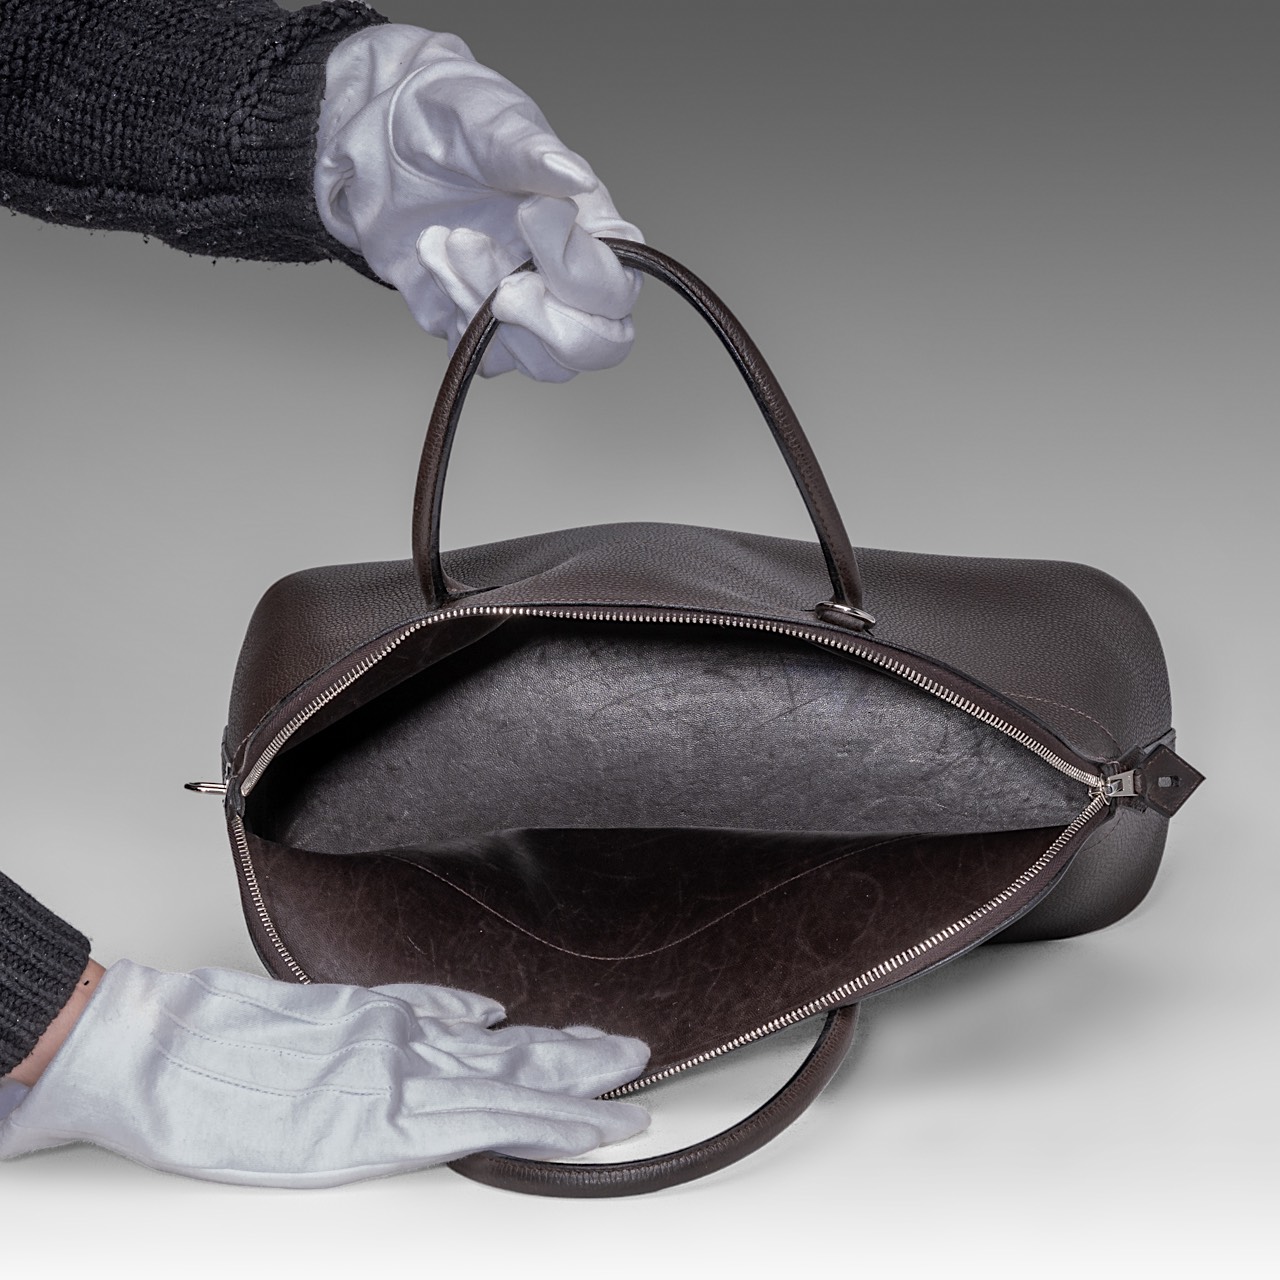 A Hermes bolide 34 CK brown veau epsom handbag, H 28 - W 37 - D 14 cm - Image 9 of 15